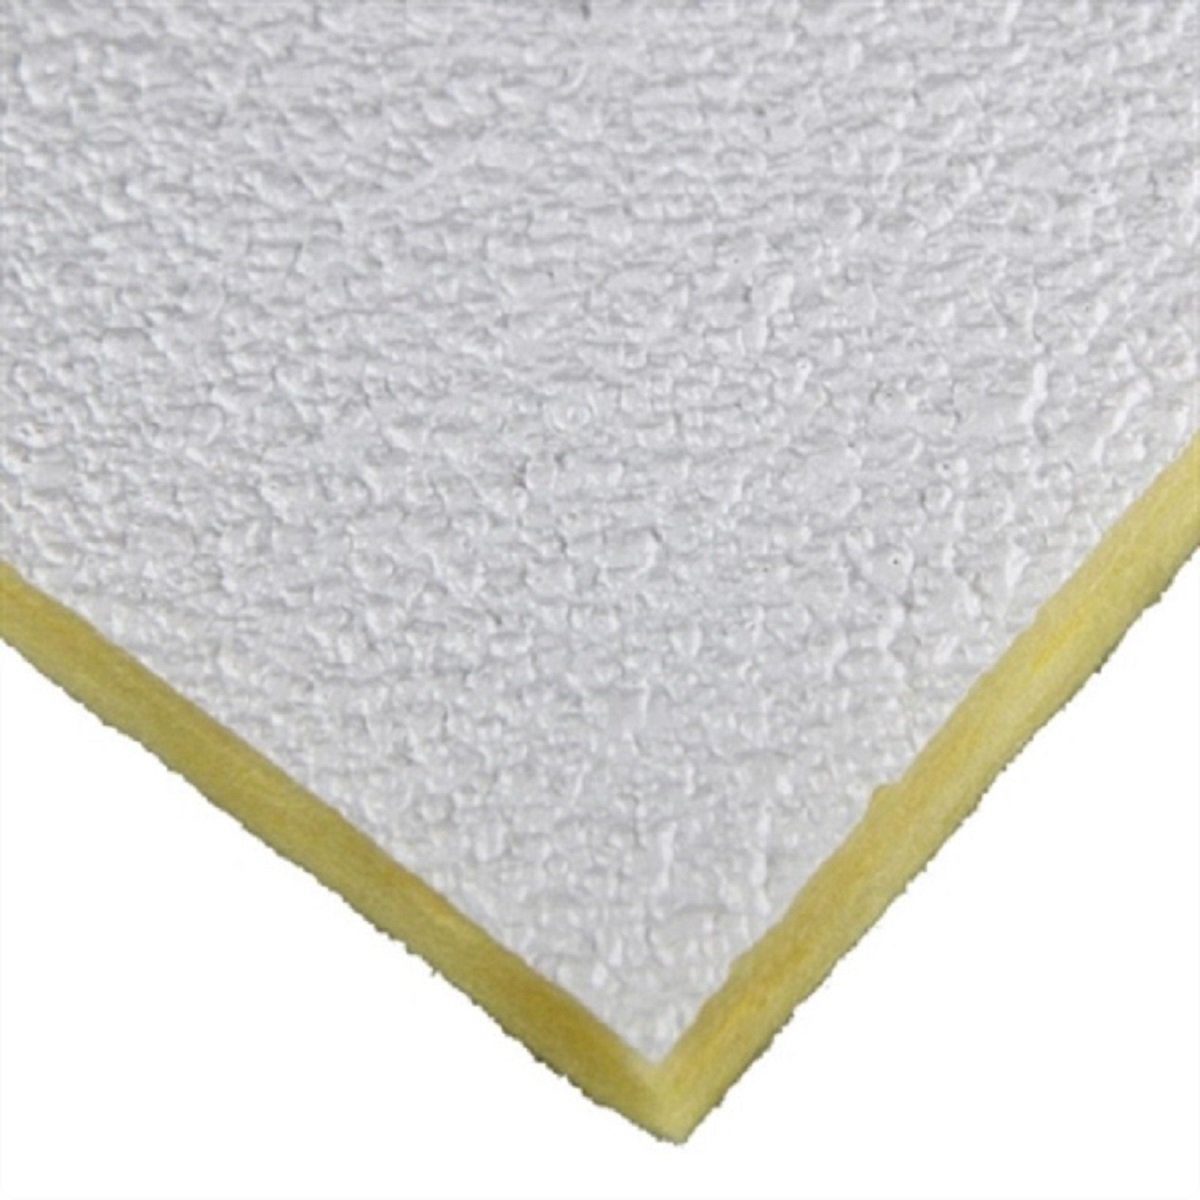 Forro Lã de Vidro Isover Boreal 1250 x 625 x 25mm c/ 14 pçs - Branco